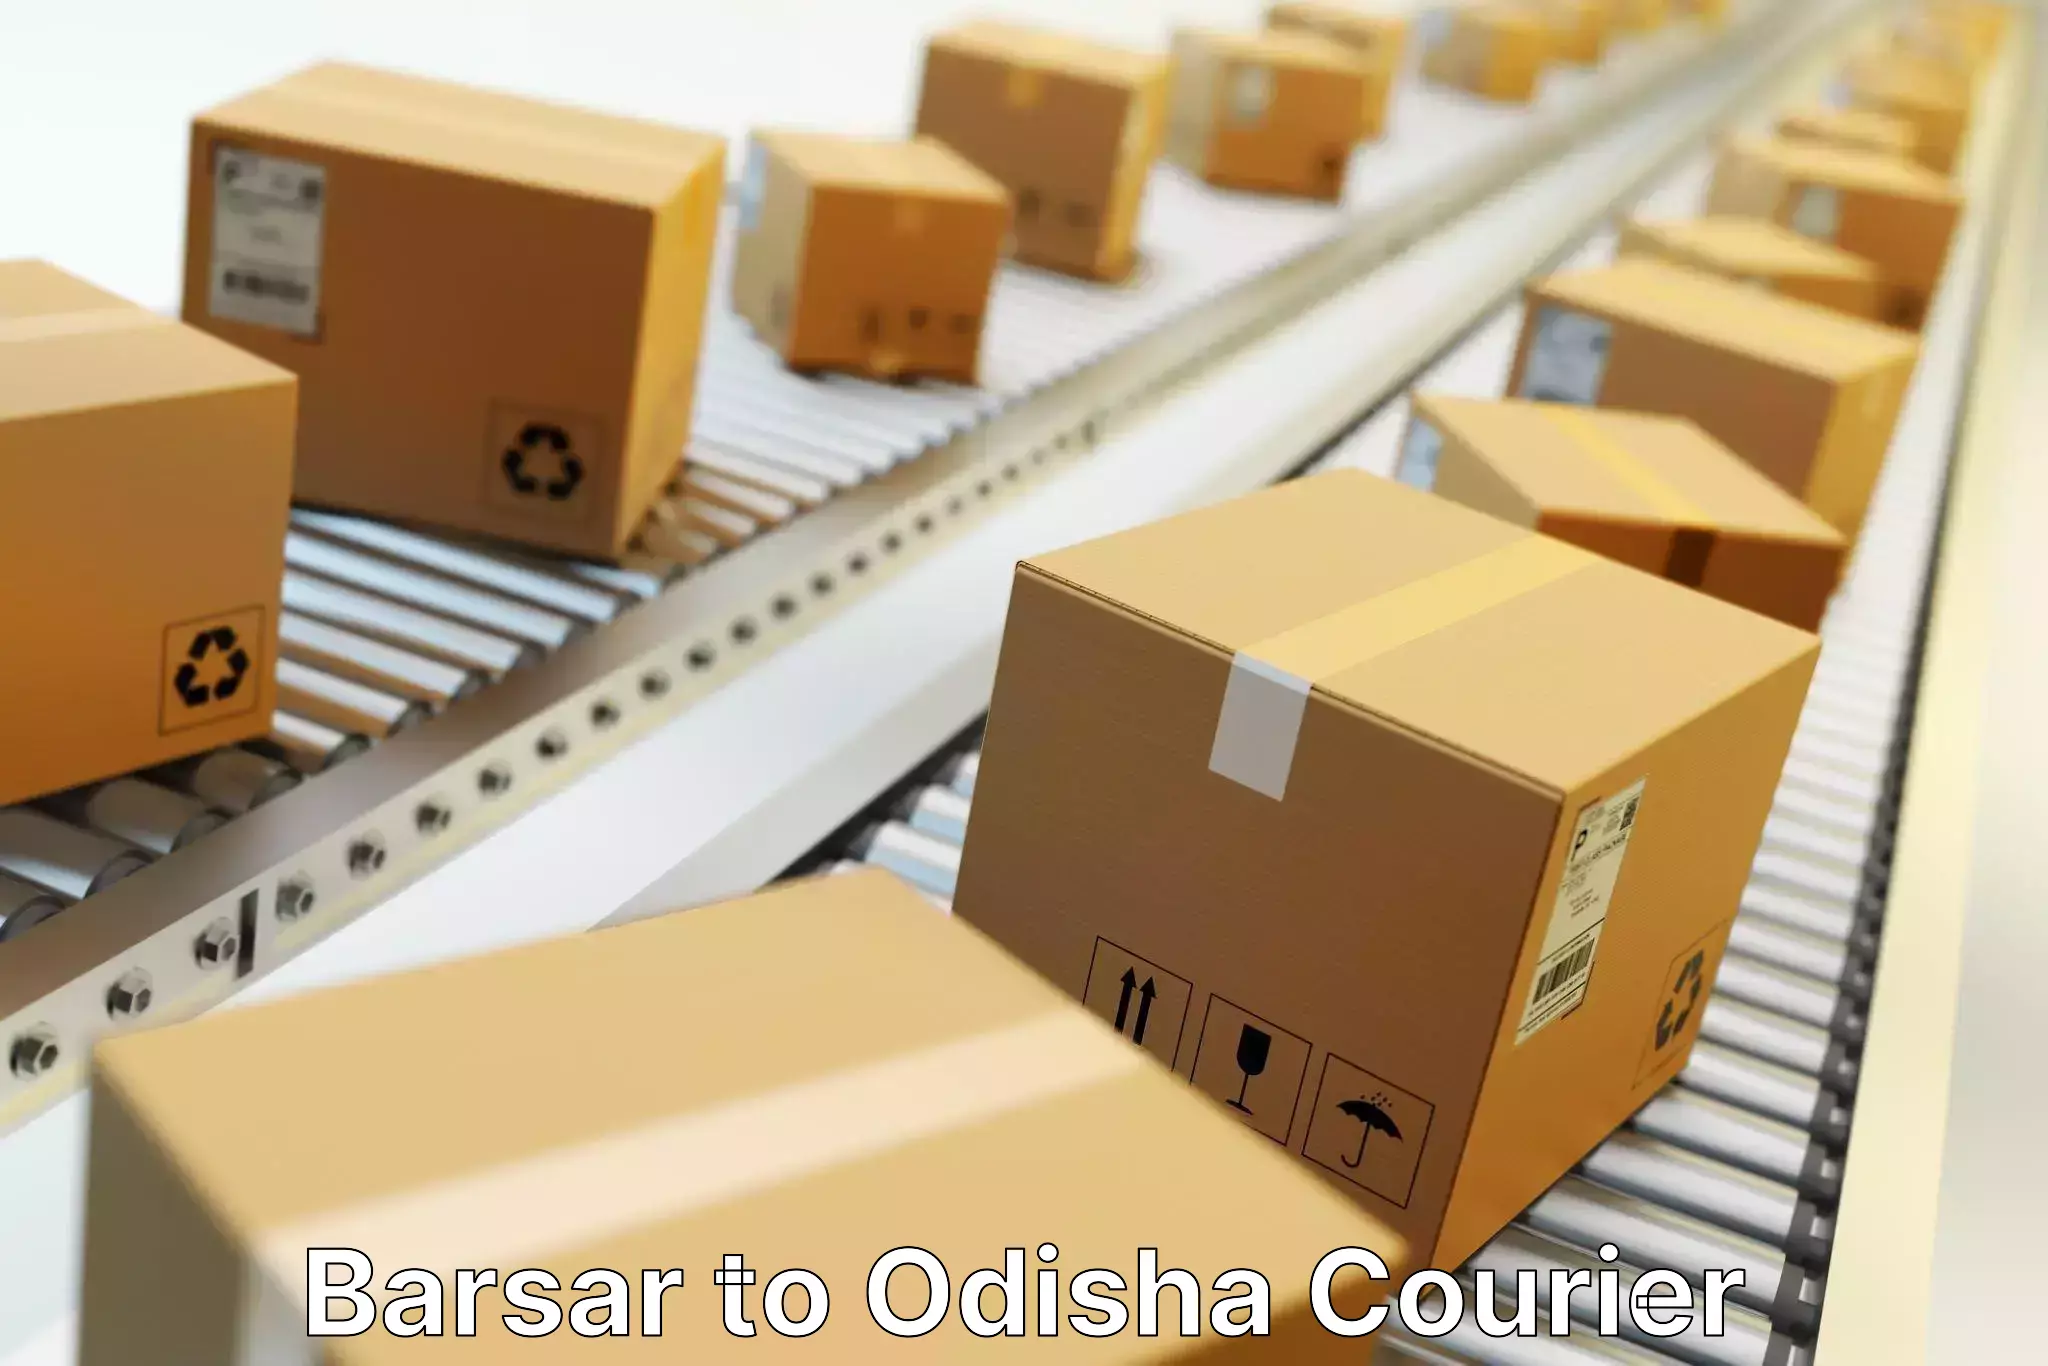 Courier service comparison in Barsar to Dhamara